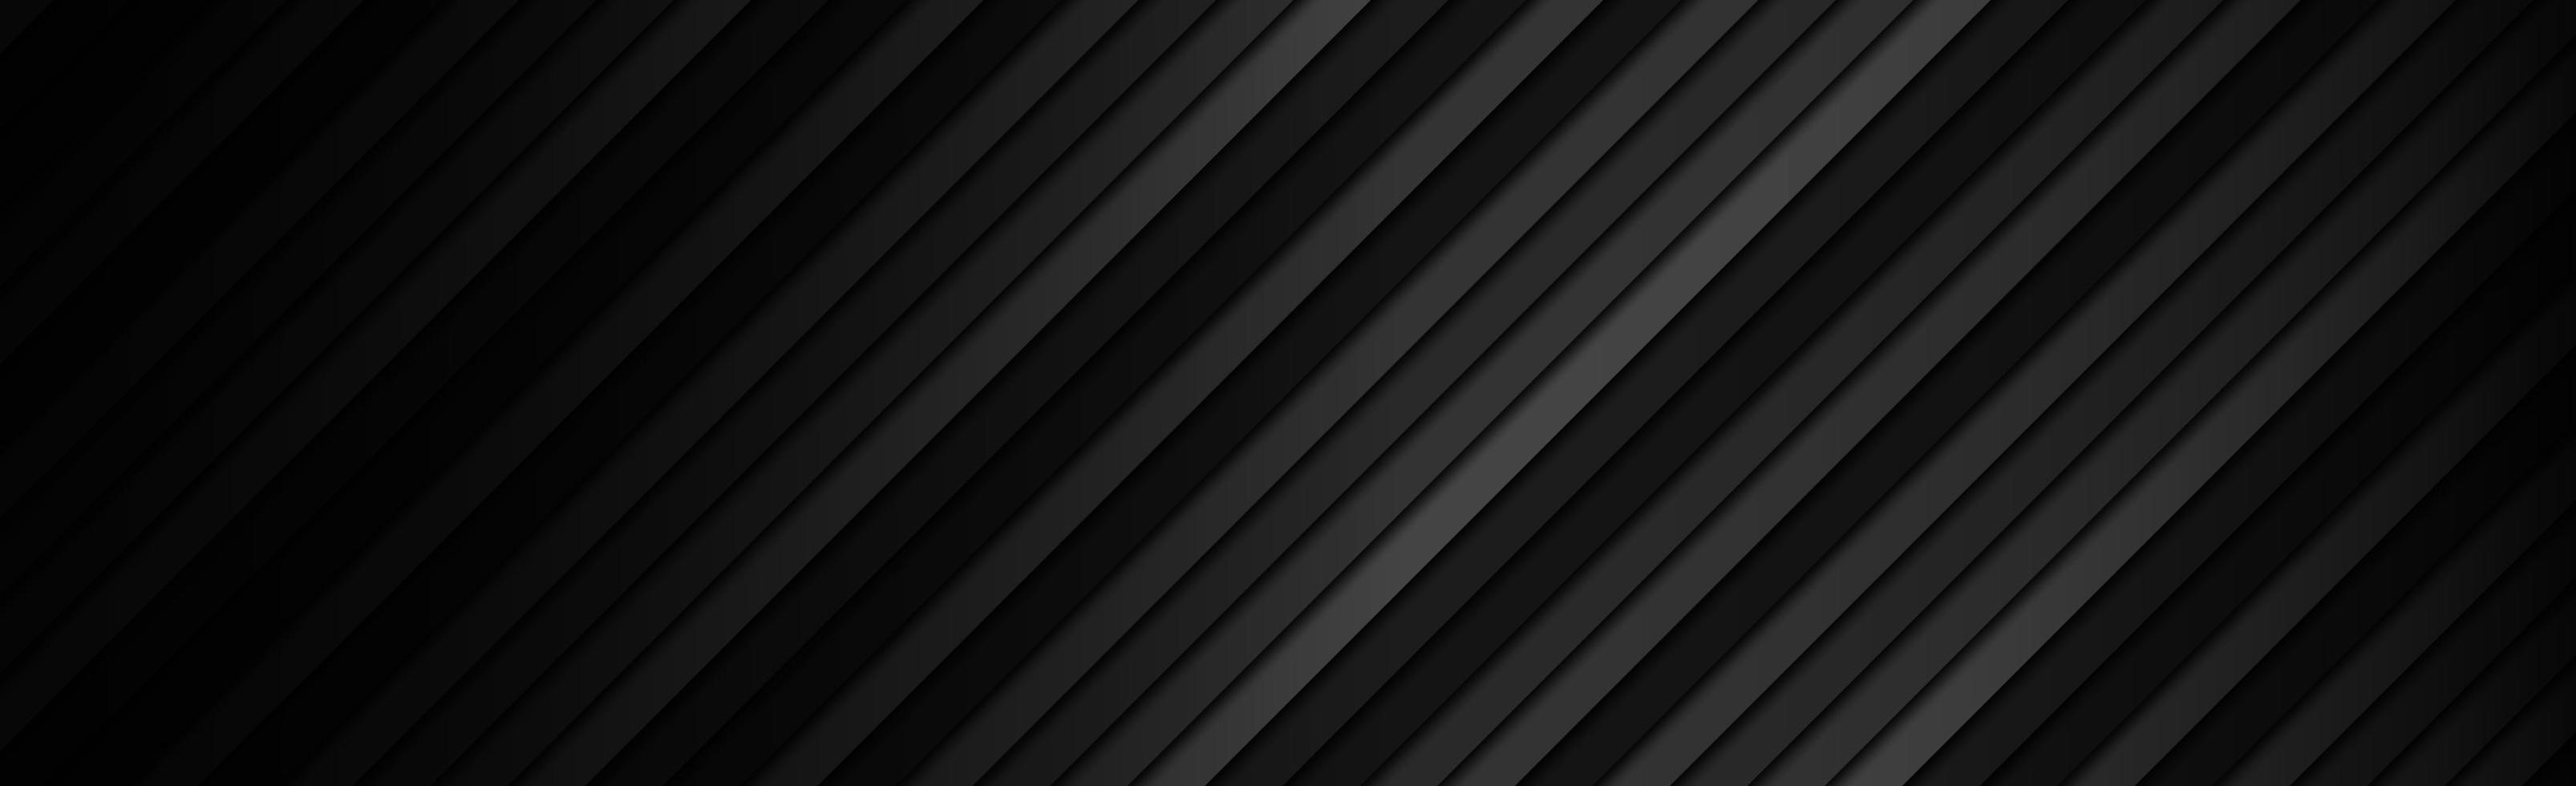 panoramische zwarte en grijze diagonale lijnen, webachtergrond - vector